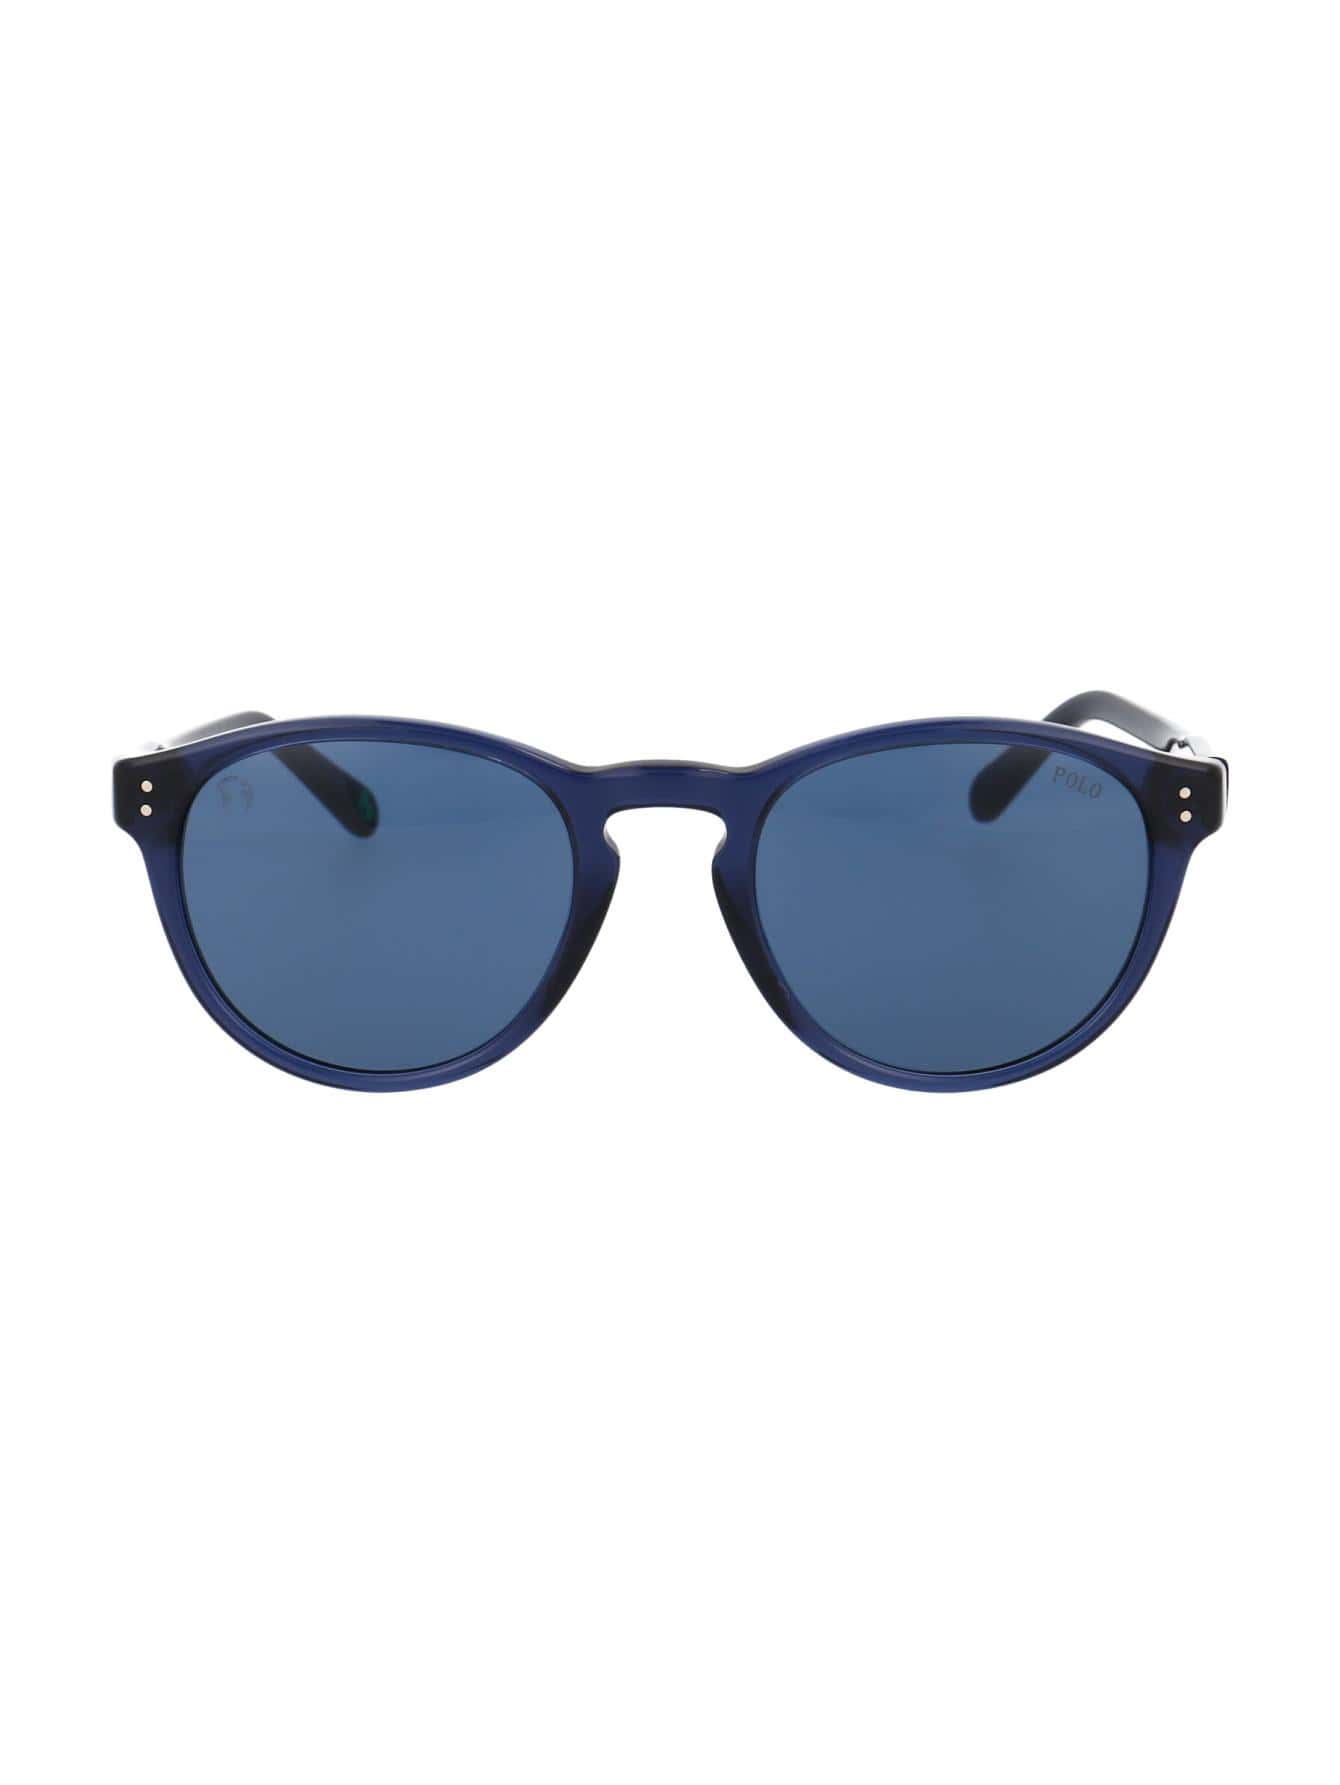 Мужские солнцезащитные очки Polo Ralph Lauren СИНИЕ 0PH4172595580, синий